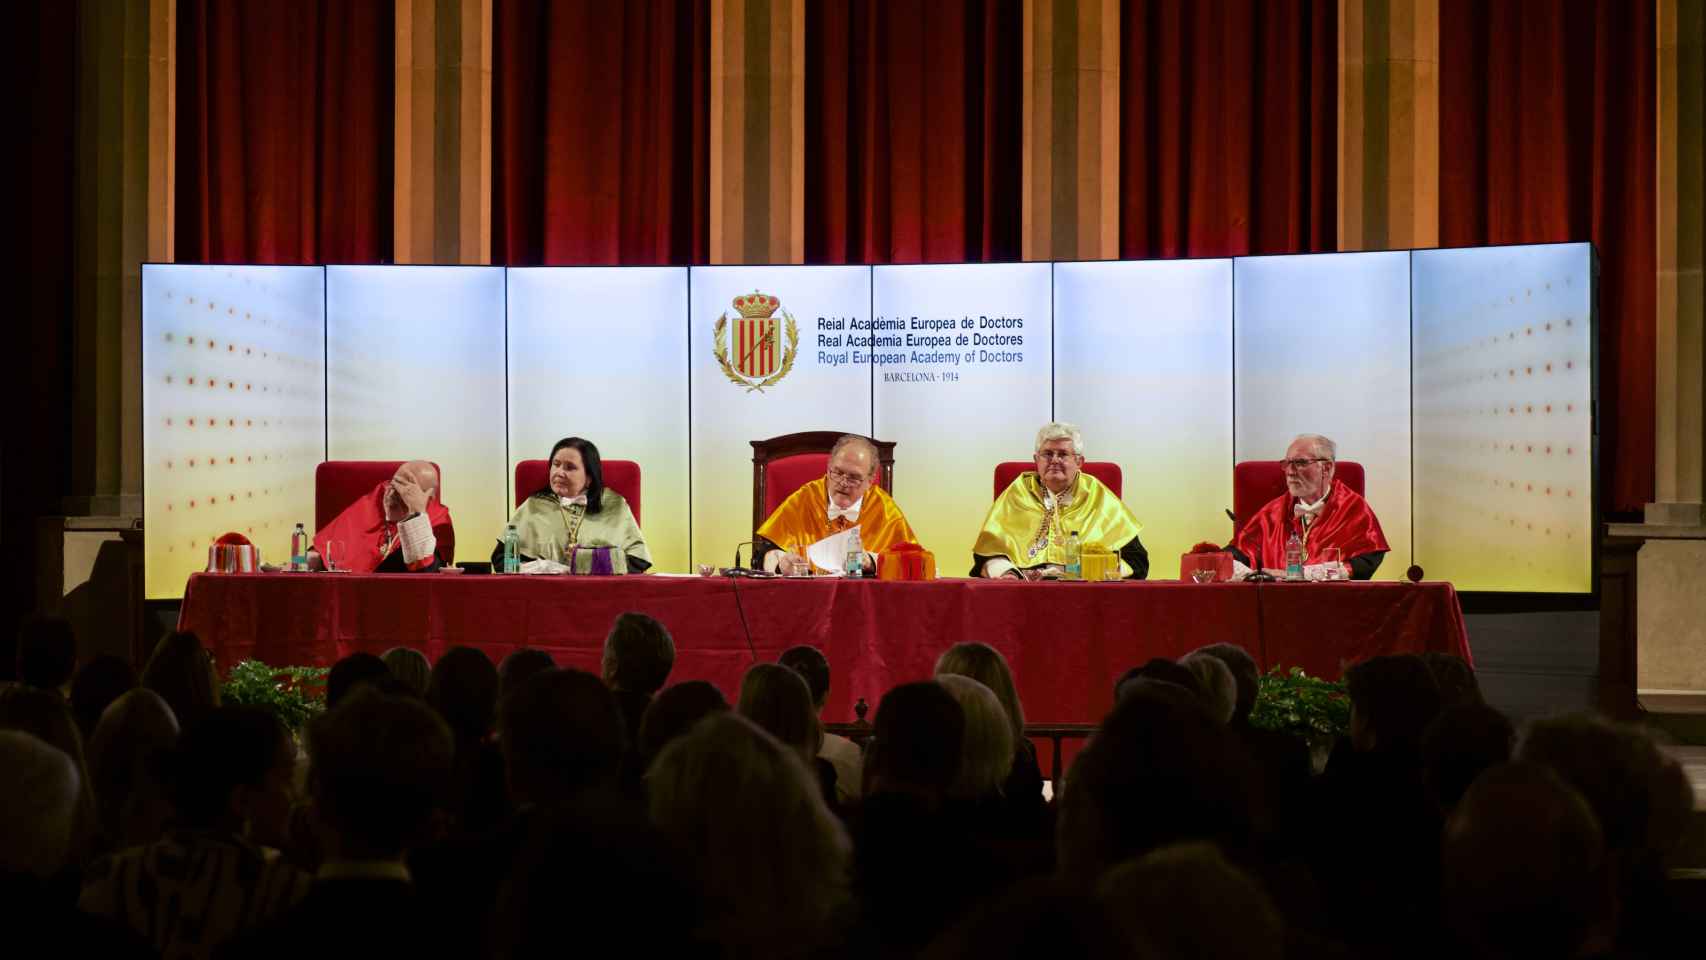 La Real Academia Europea de Doctores celebra una sesión en Foment del Treball por el ingreso de Josep Sánchez Llibre